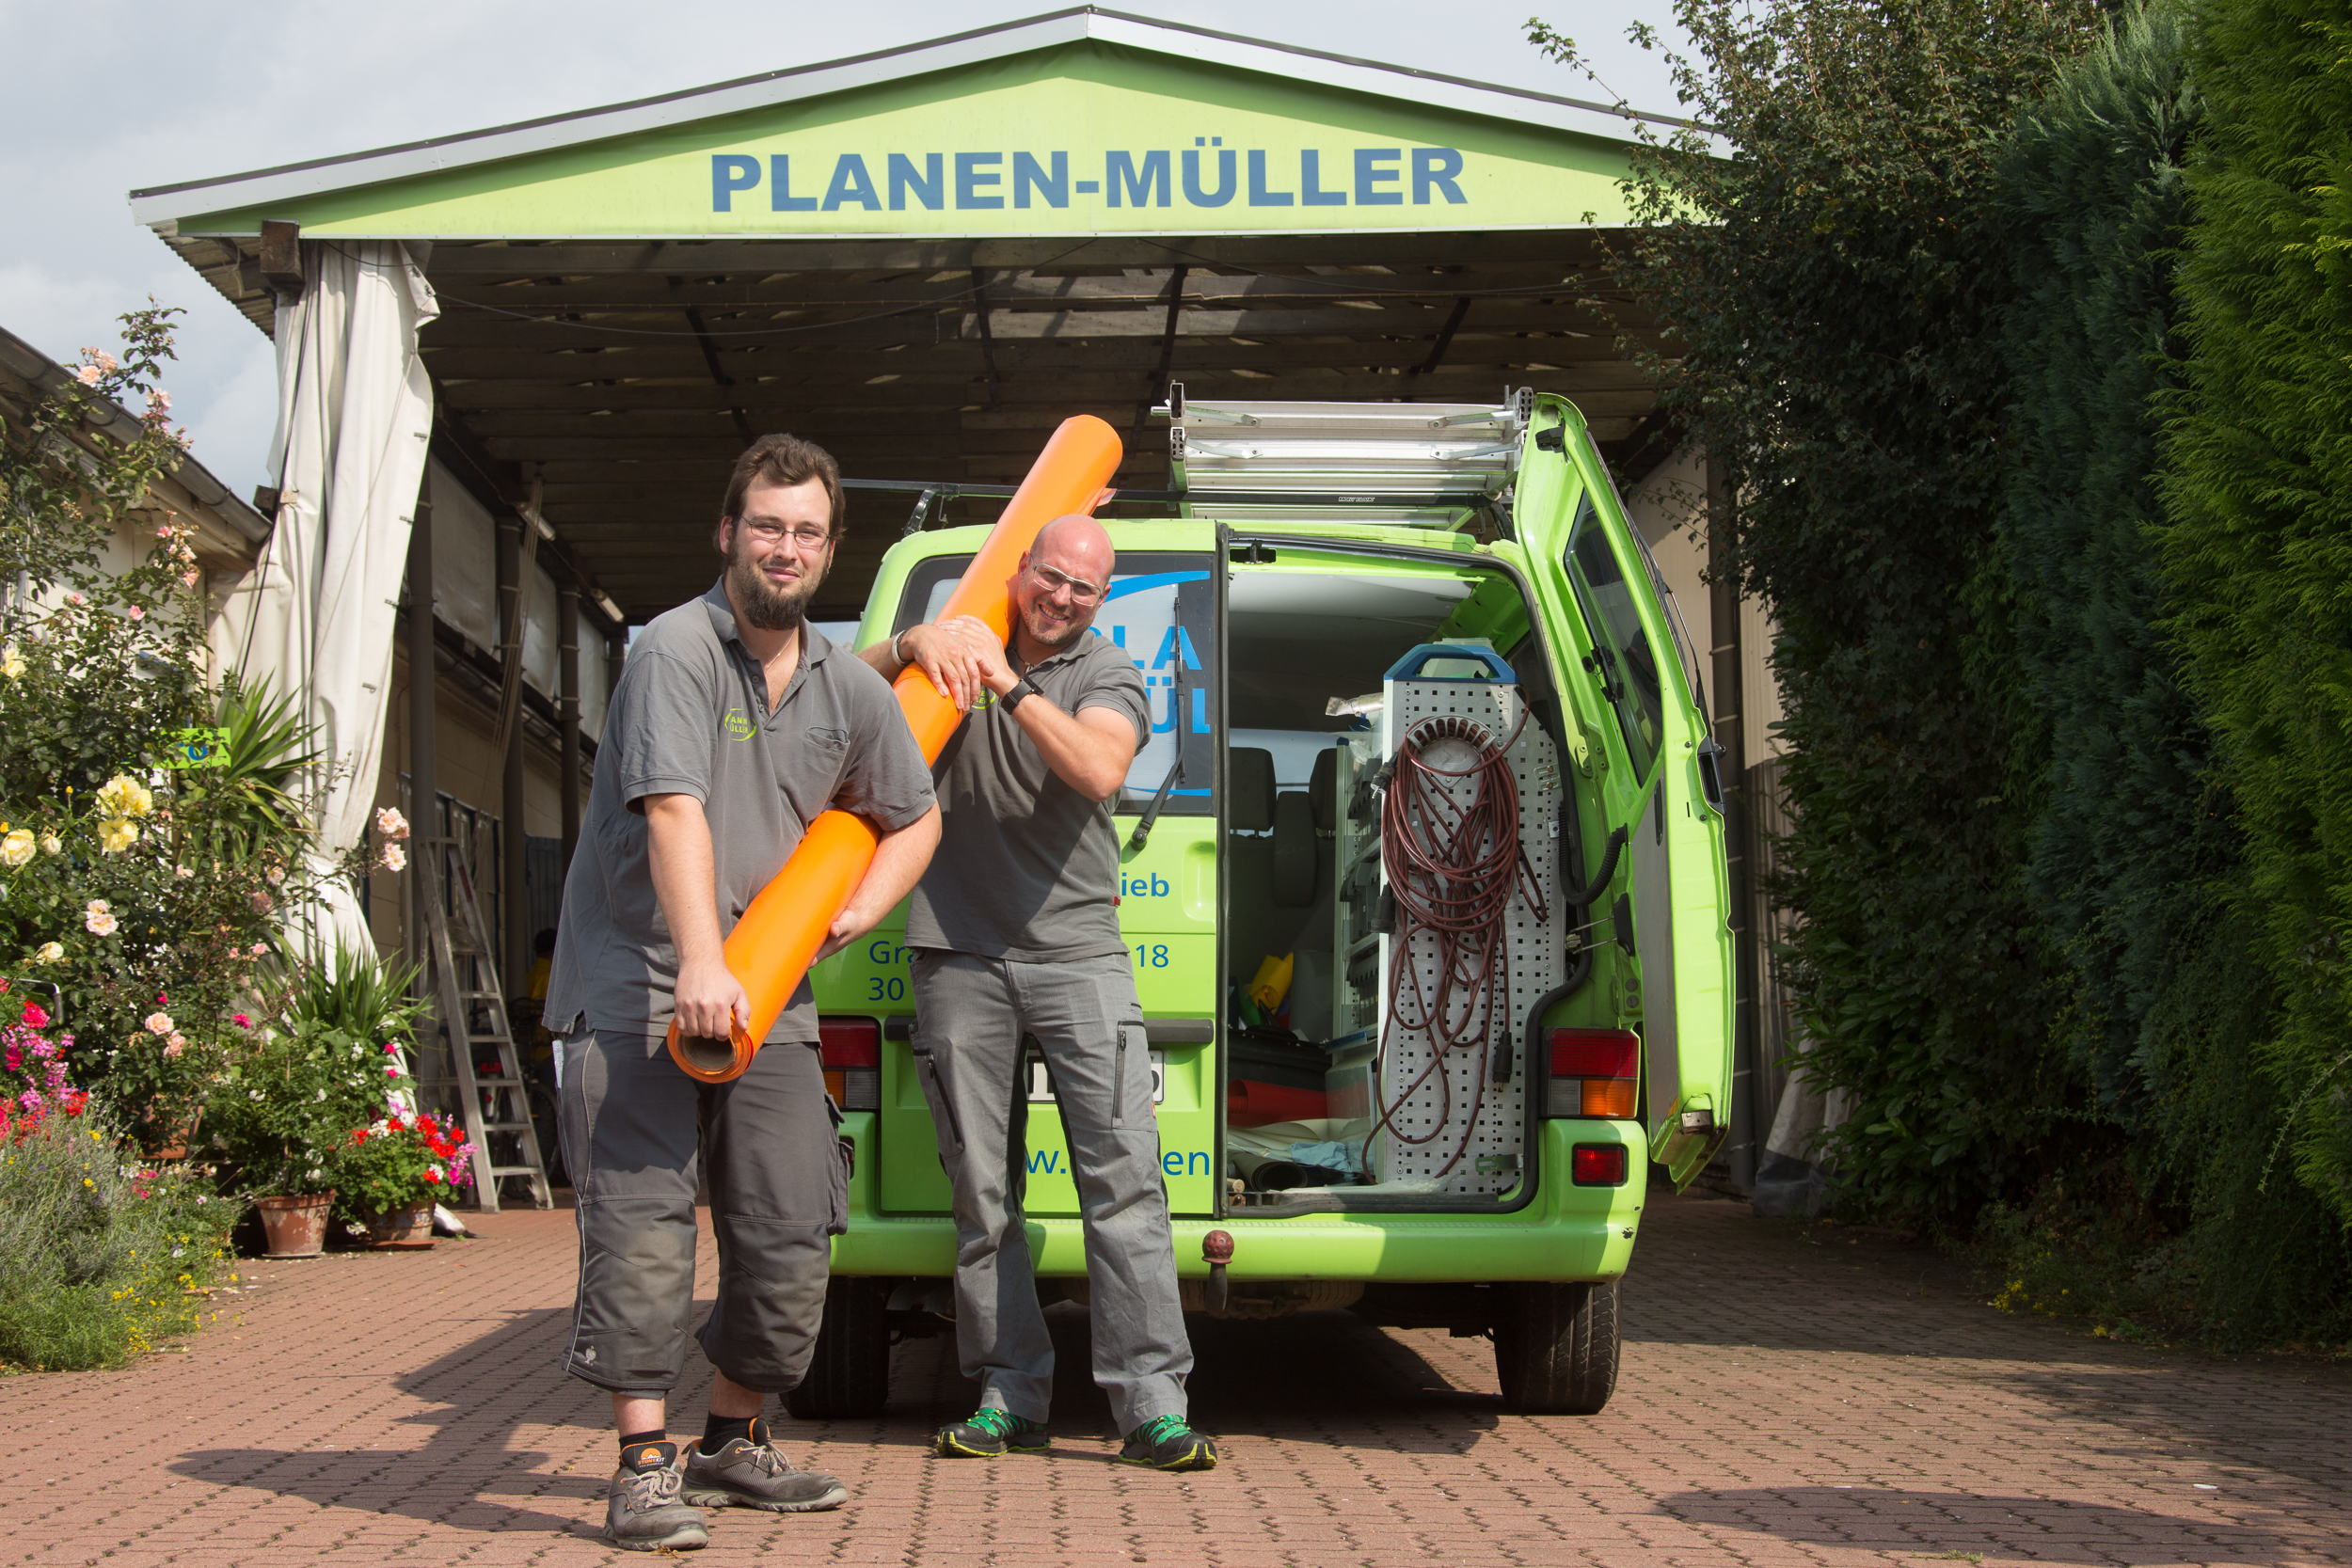 Mitarbeiter der PLANEN-MÜLLER GmbH in Aktion